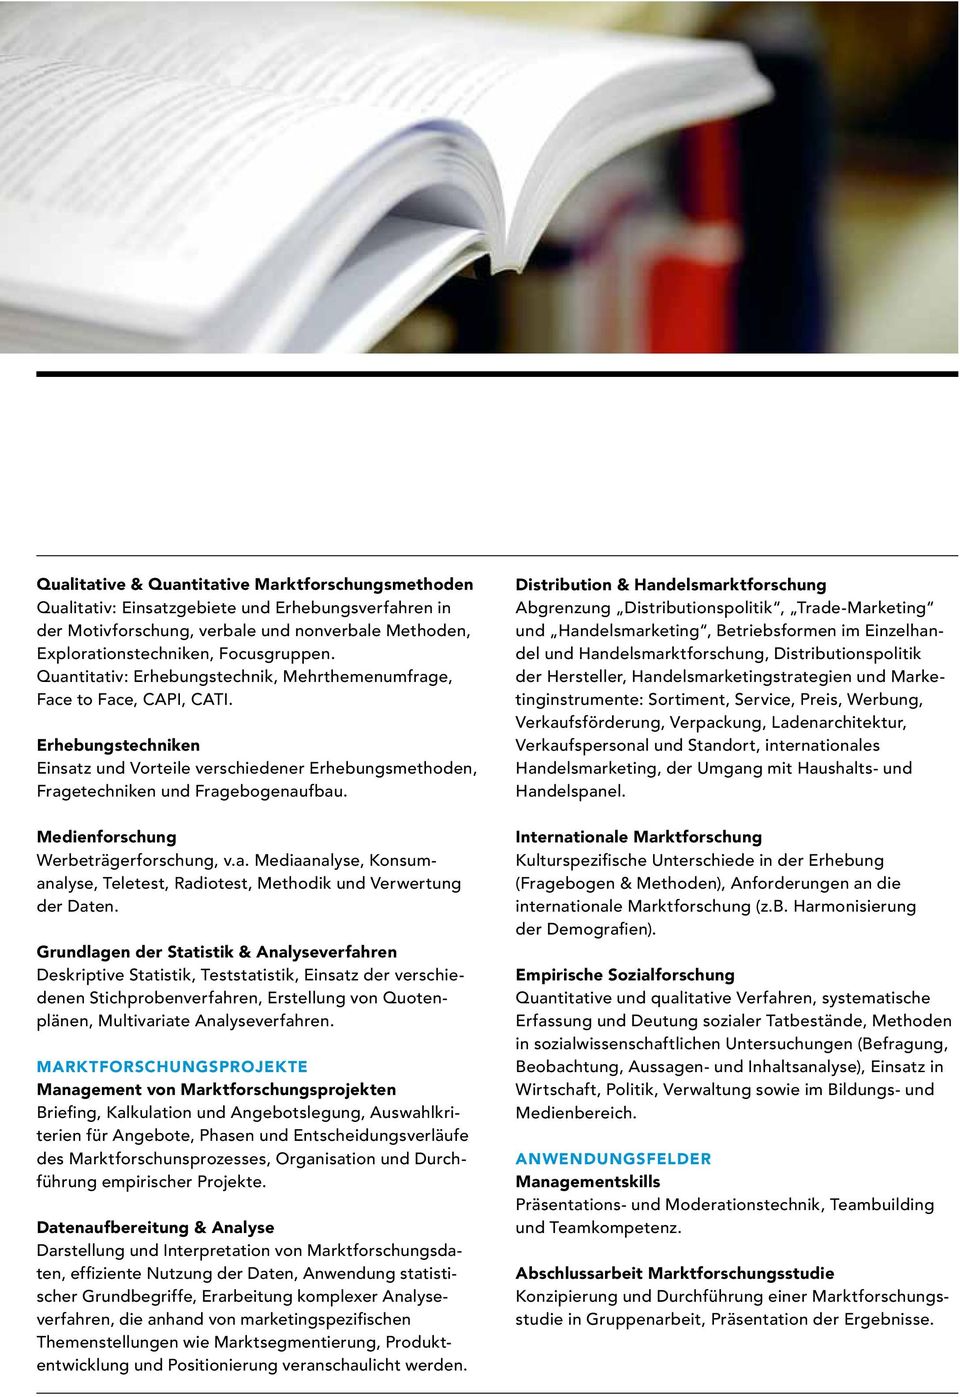 Medienforschung Werbeträgerforschung, v.a. Mediaanalyse, Konsumanalyse, Teletest, Radiotest, Methodik und Verwertung der Daten.